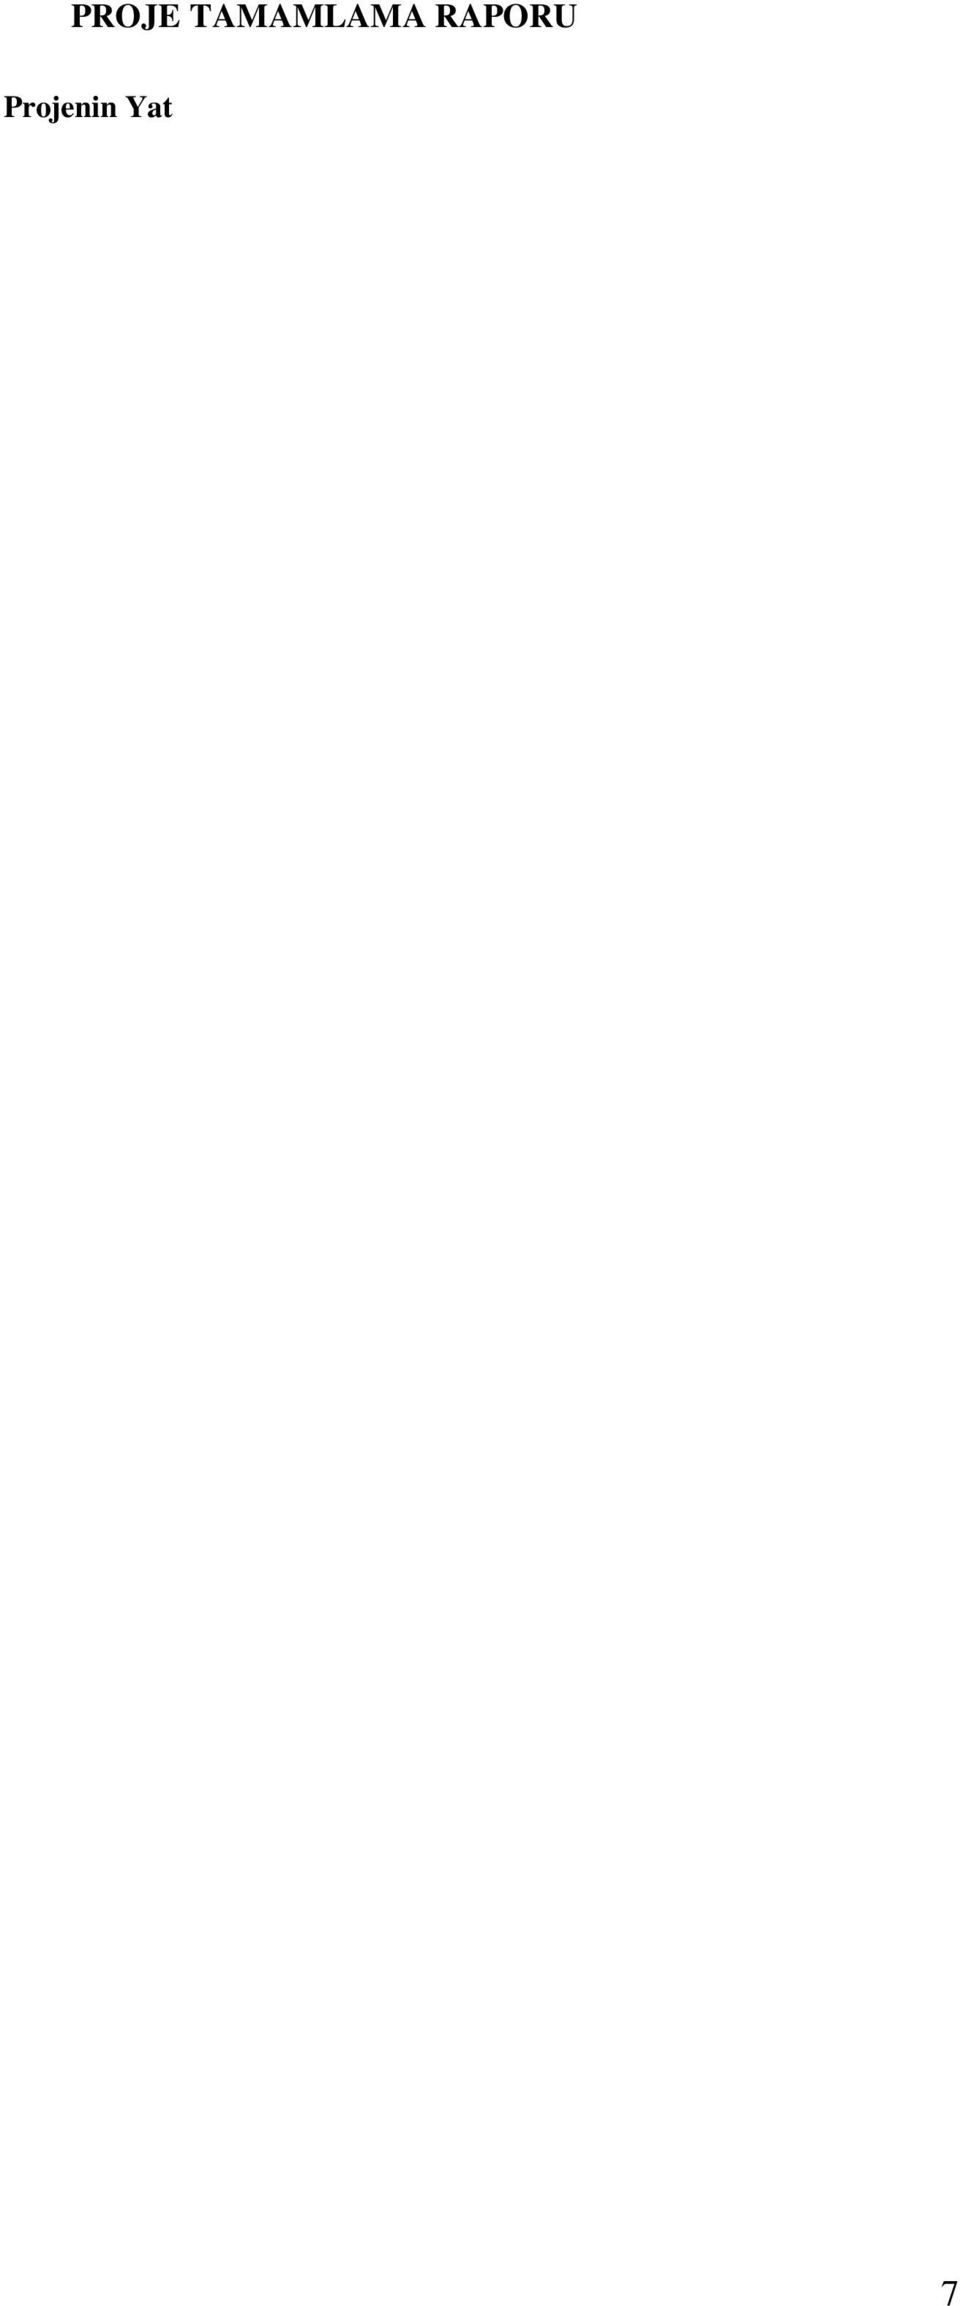 Proje Yeri BURSA BURSA Karakteristiği Bina Onarım-Tadilat Bina Onarım-Tadilat Fiziki Hedefi %100 %100 Başlama-Bitiş Tarihi 2015-2015 2015-2015 Proje Sözleşmesi Tarihi 26/02/2015 Sözleşme İhale Bedeli